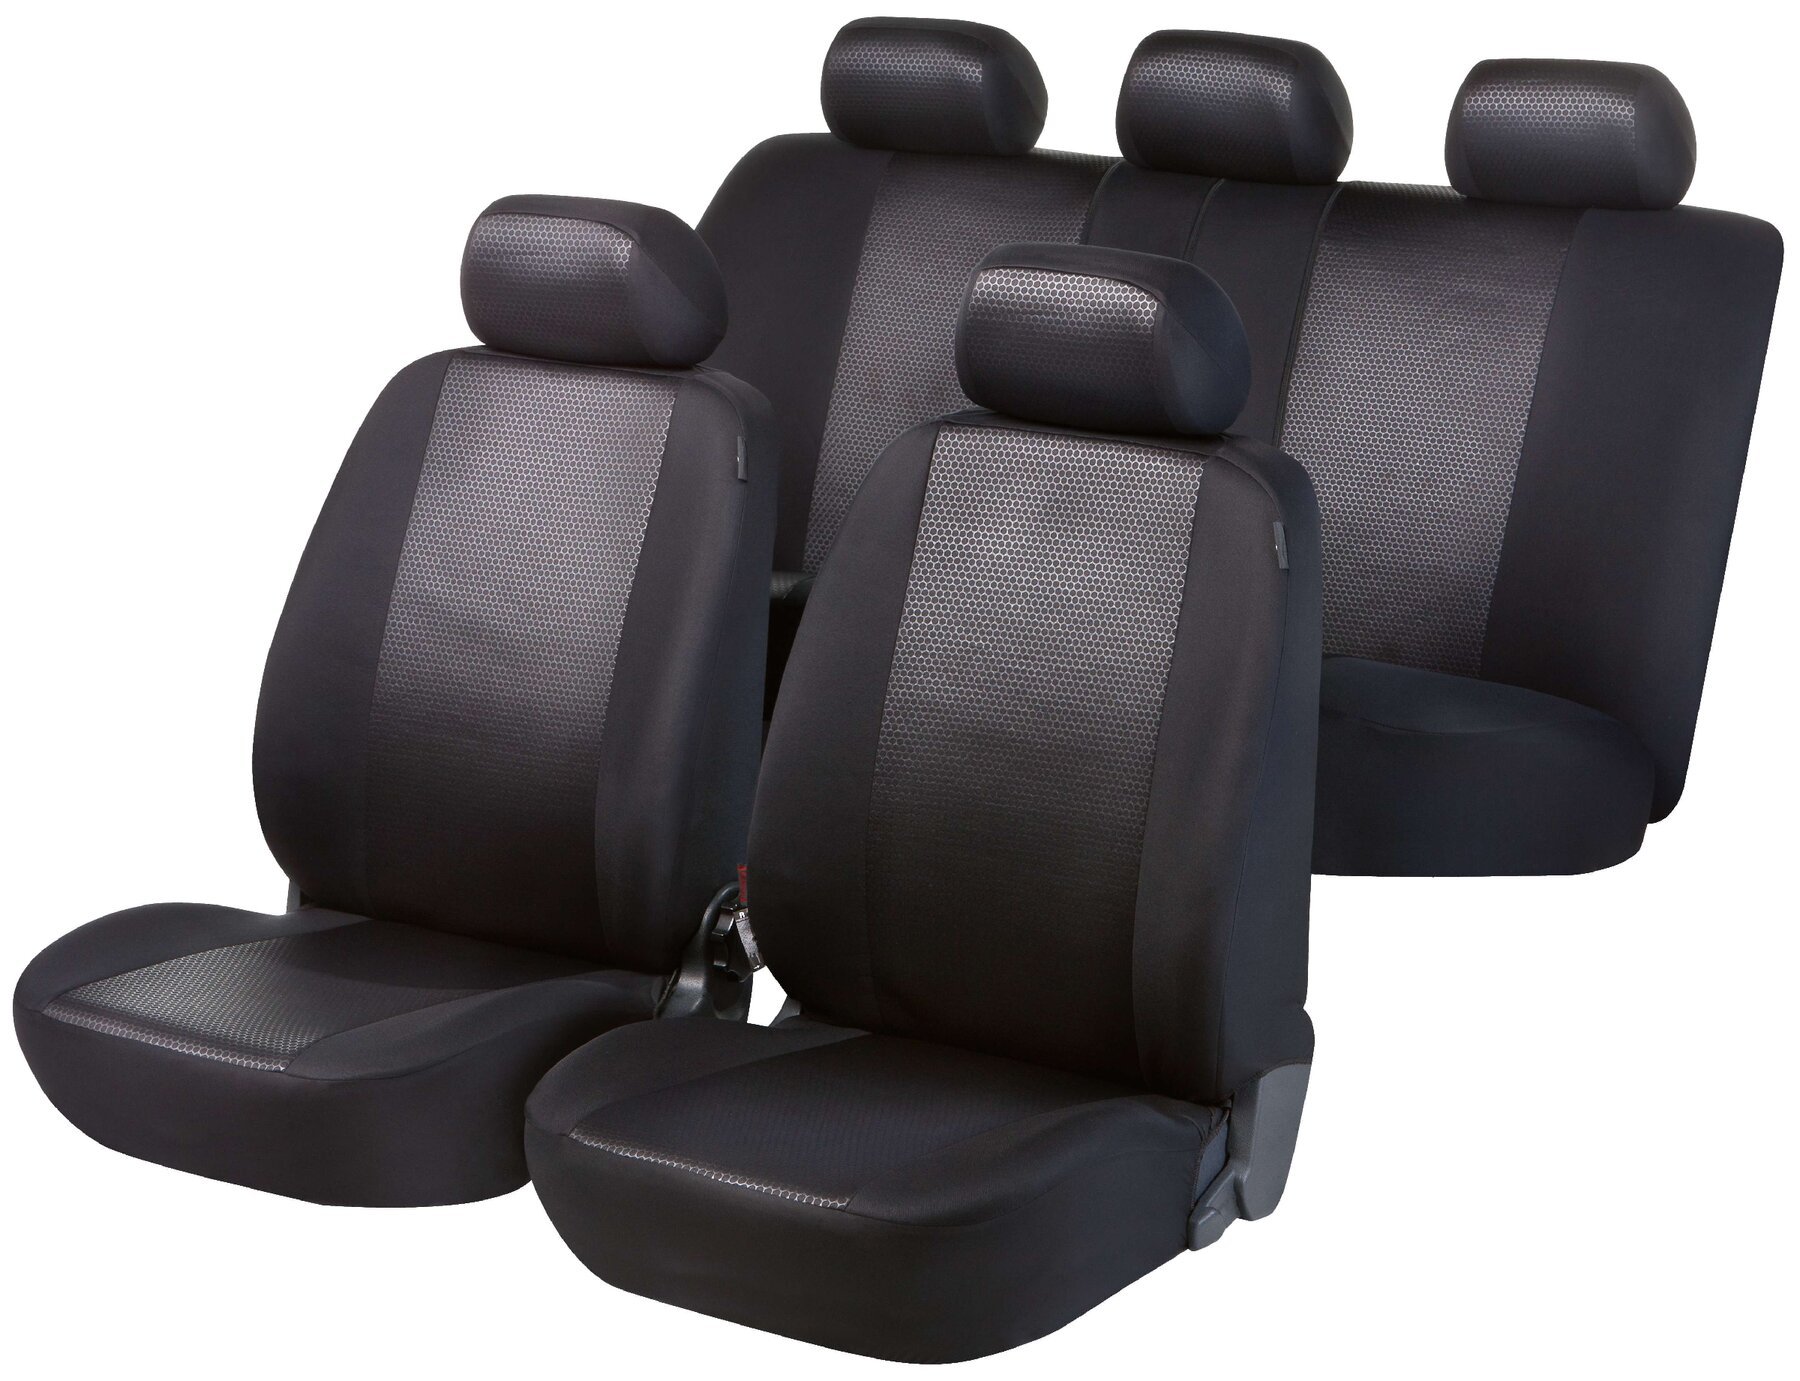 Auto stoelbekleding, Auto Autostoelhoes Shiny Premium, set, 2 stoelbeschermer voor voorstoel, 1 stoelbeschermer voor achterbank in zwart/grijs